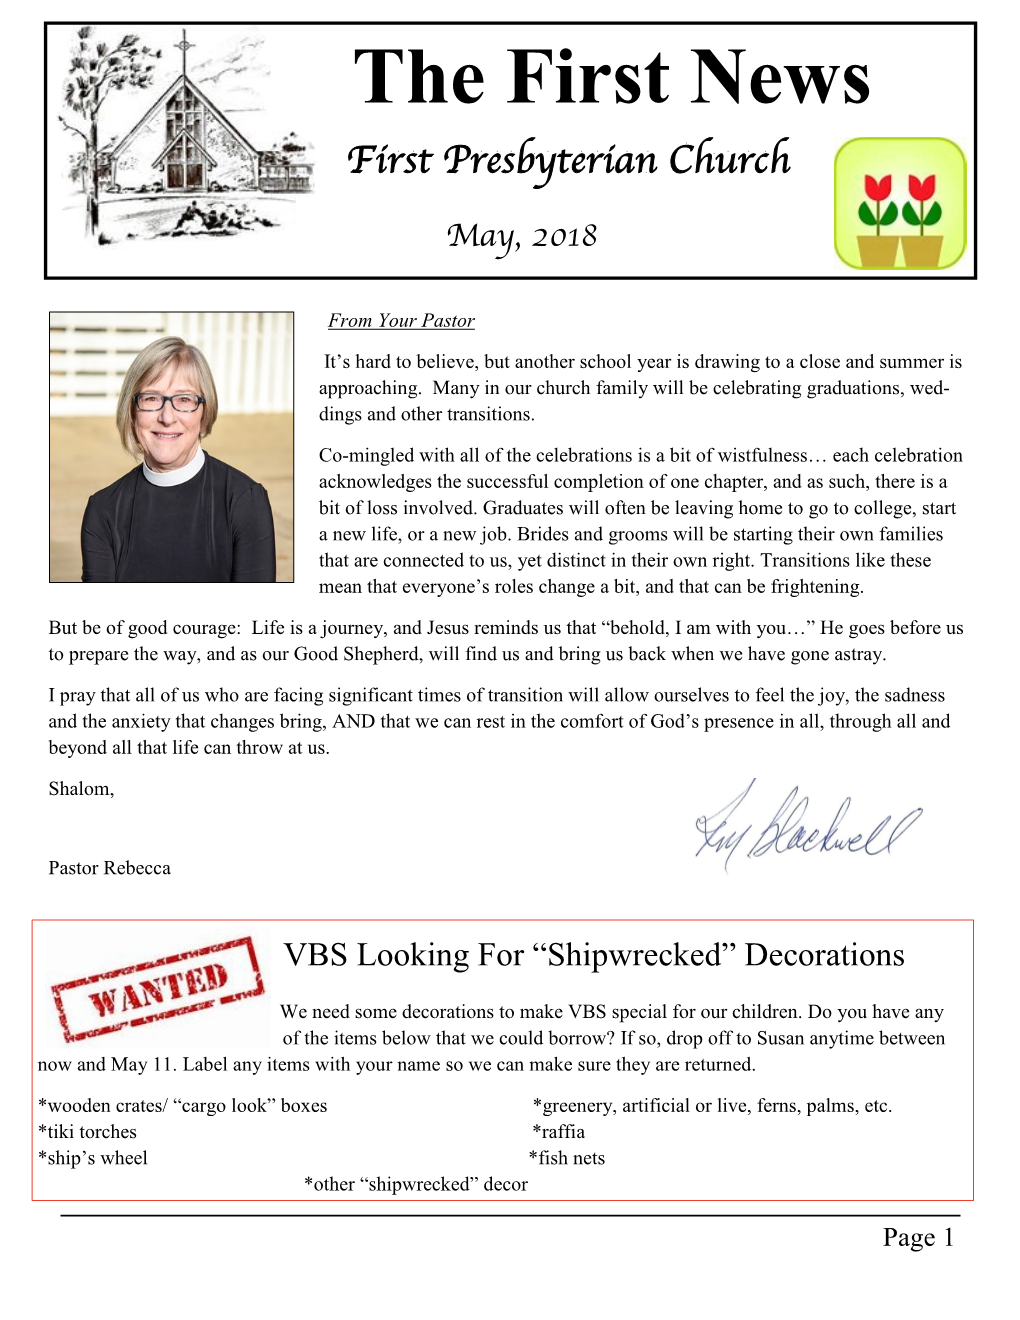 The First News First Presbyterian Church